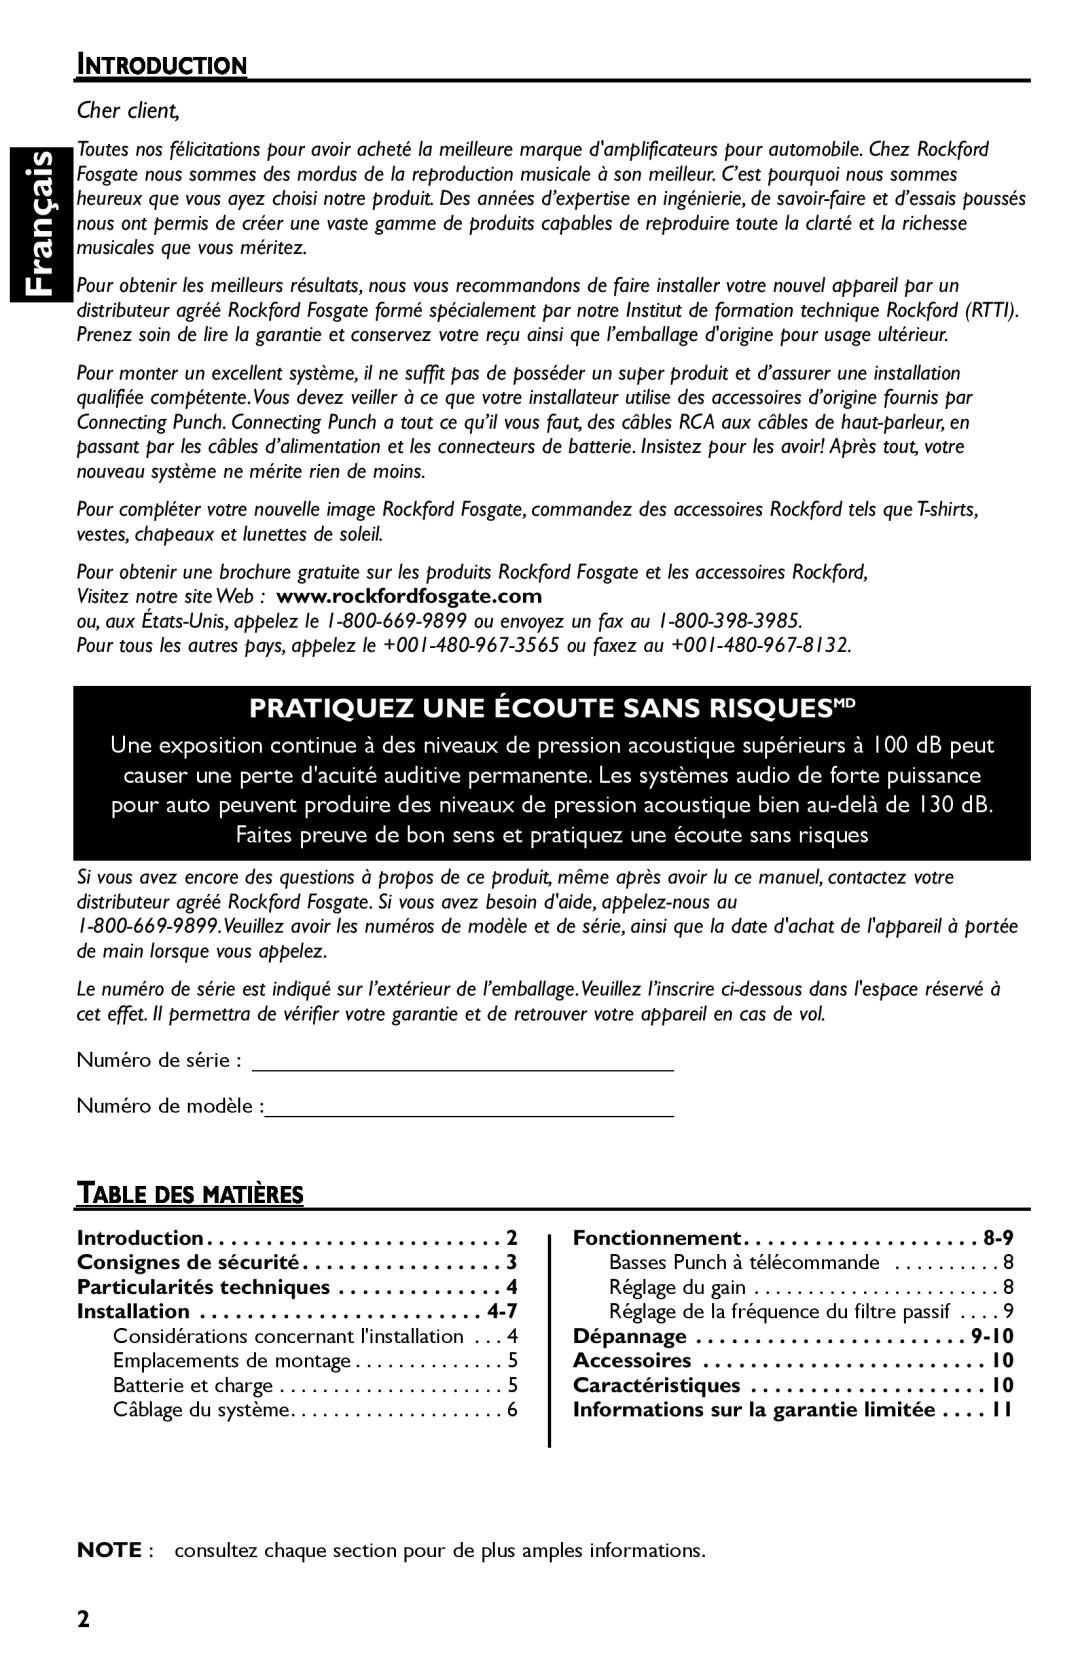 Rockford Fosgate Punch 45 manual Français, Pratiquez Une Écoute Sans Risquesmd, Cher client 